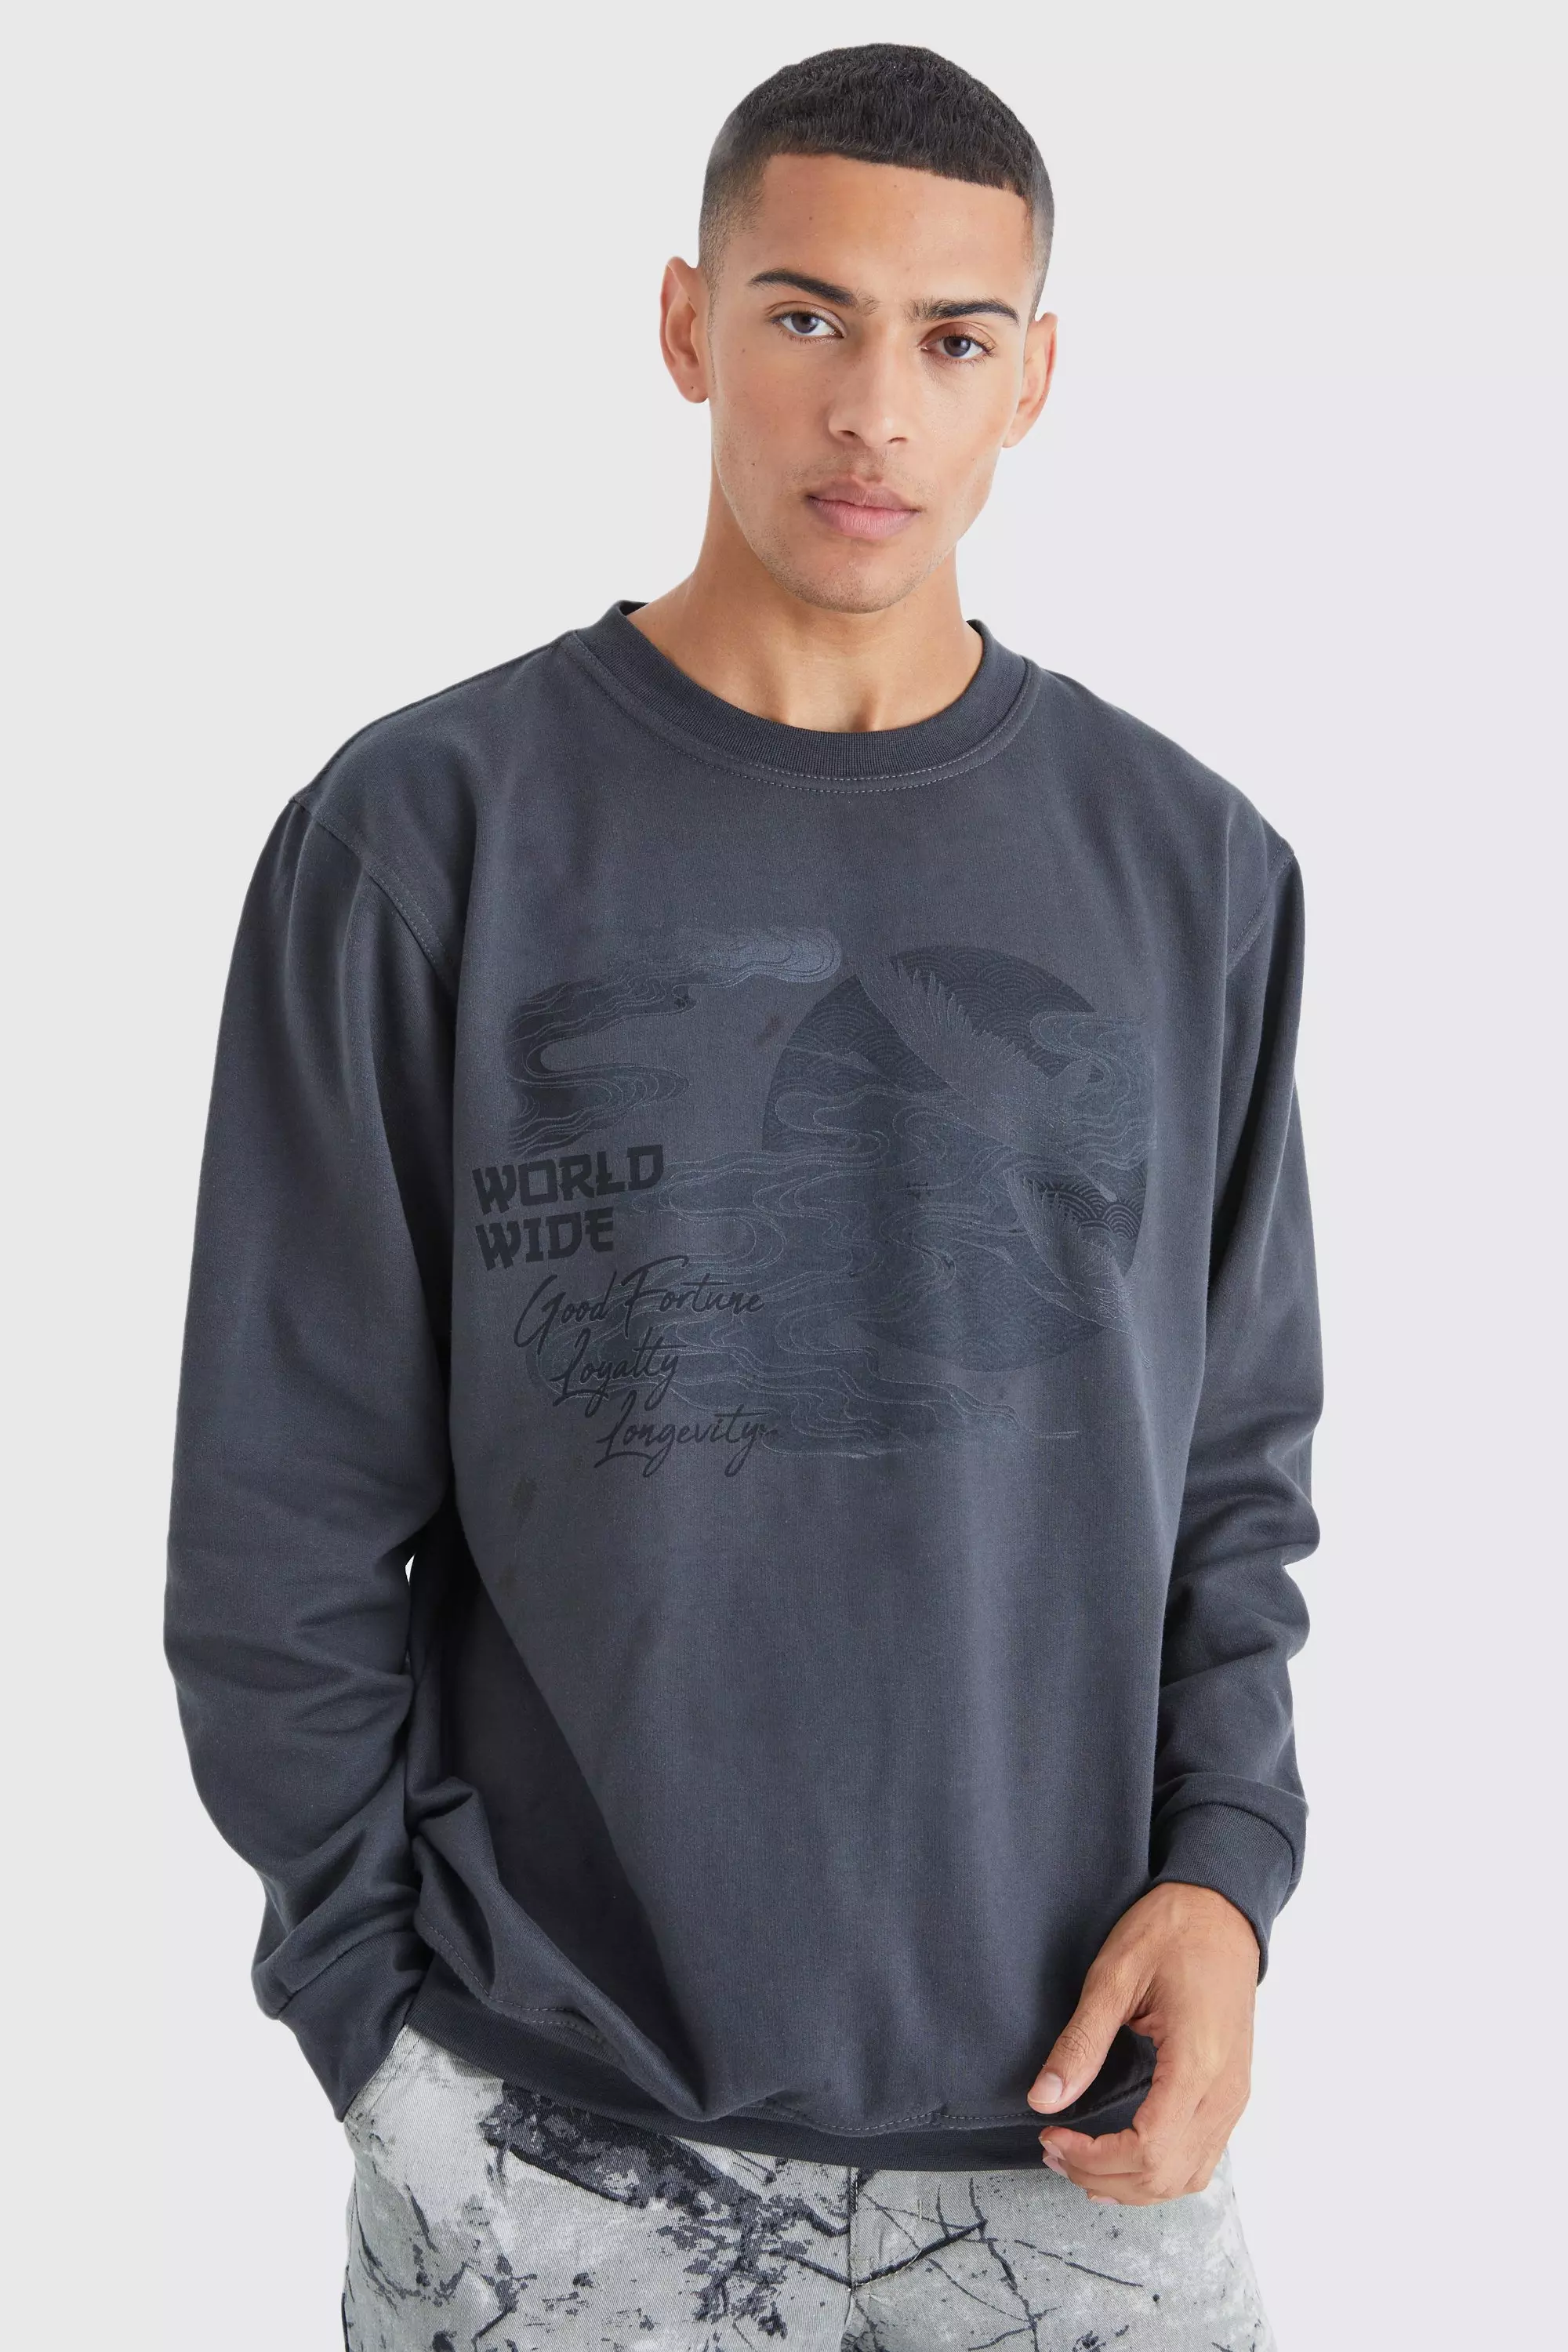 Oversized Boxy Graphic Sweatshirt Charcoal